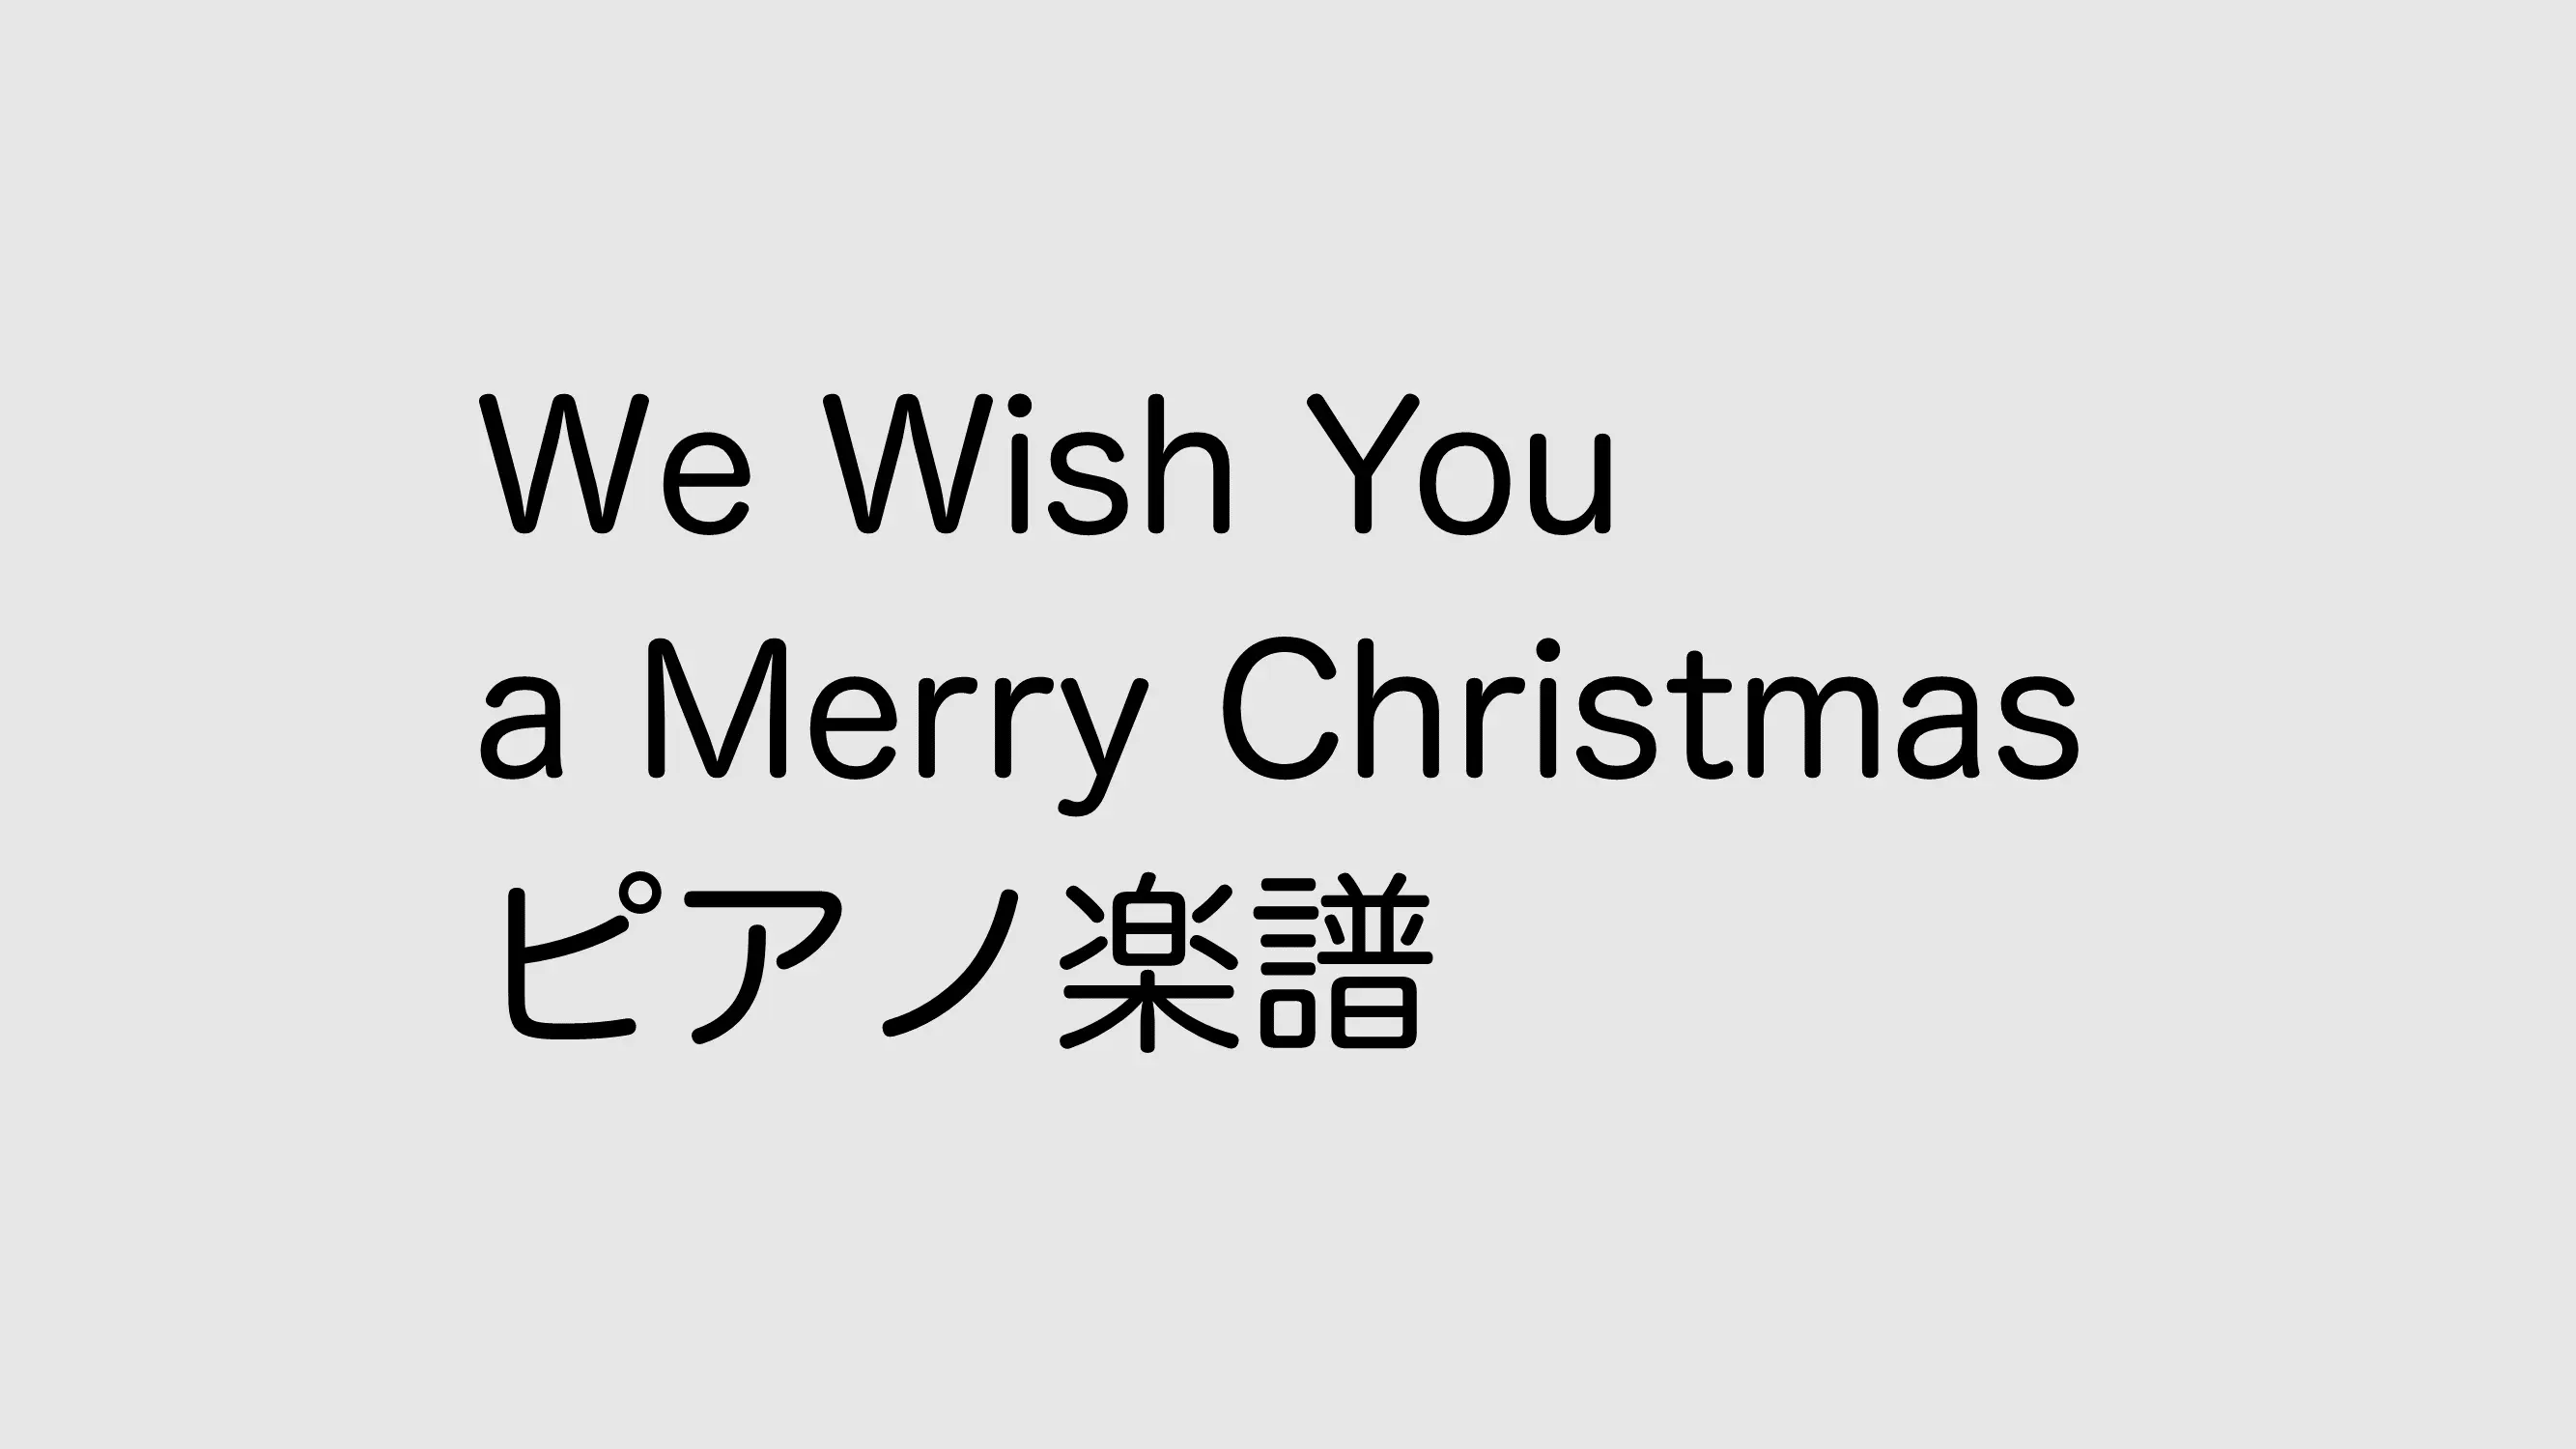 We wish you a merry christmasのピアノ楽譜